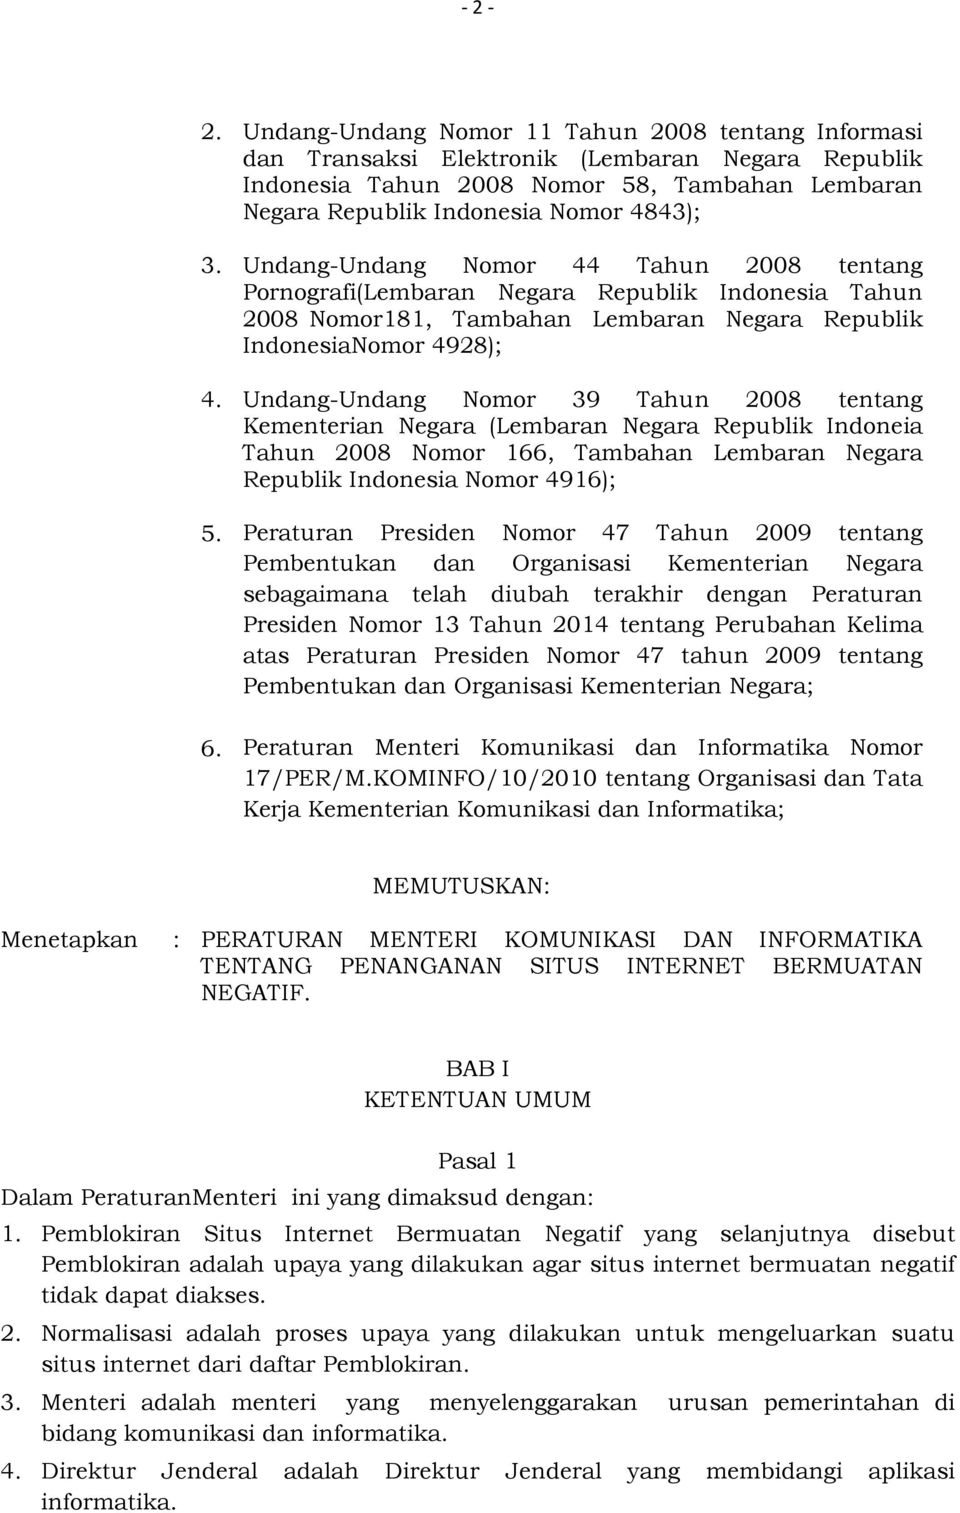 Undang-Undang Nomor 39 Tahun 2008 tentang Kementerian Negara (Lembaran Negara Republik Indoneia Tahun 2008 Nomor 166, Tambahan Lembaran Negara Republik Indonesia Nomor 4916); Peraturan Presiden Nomor